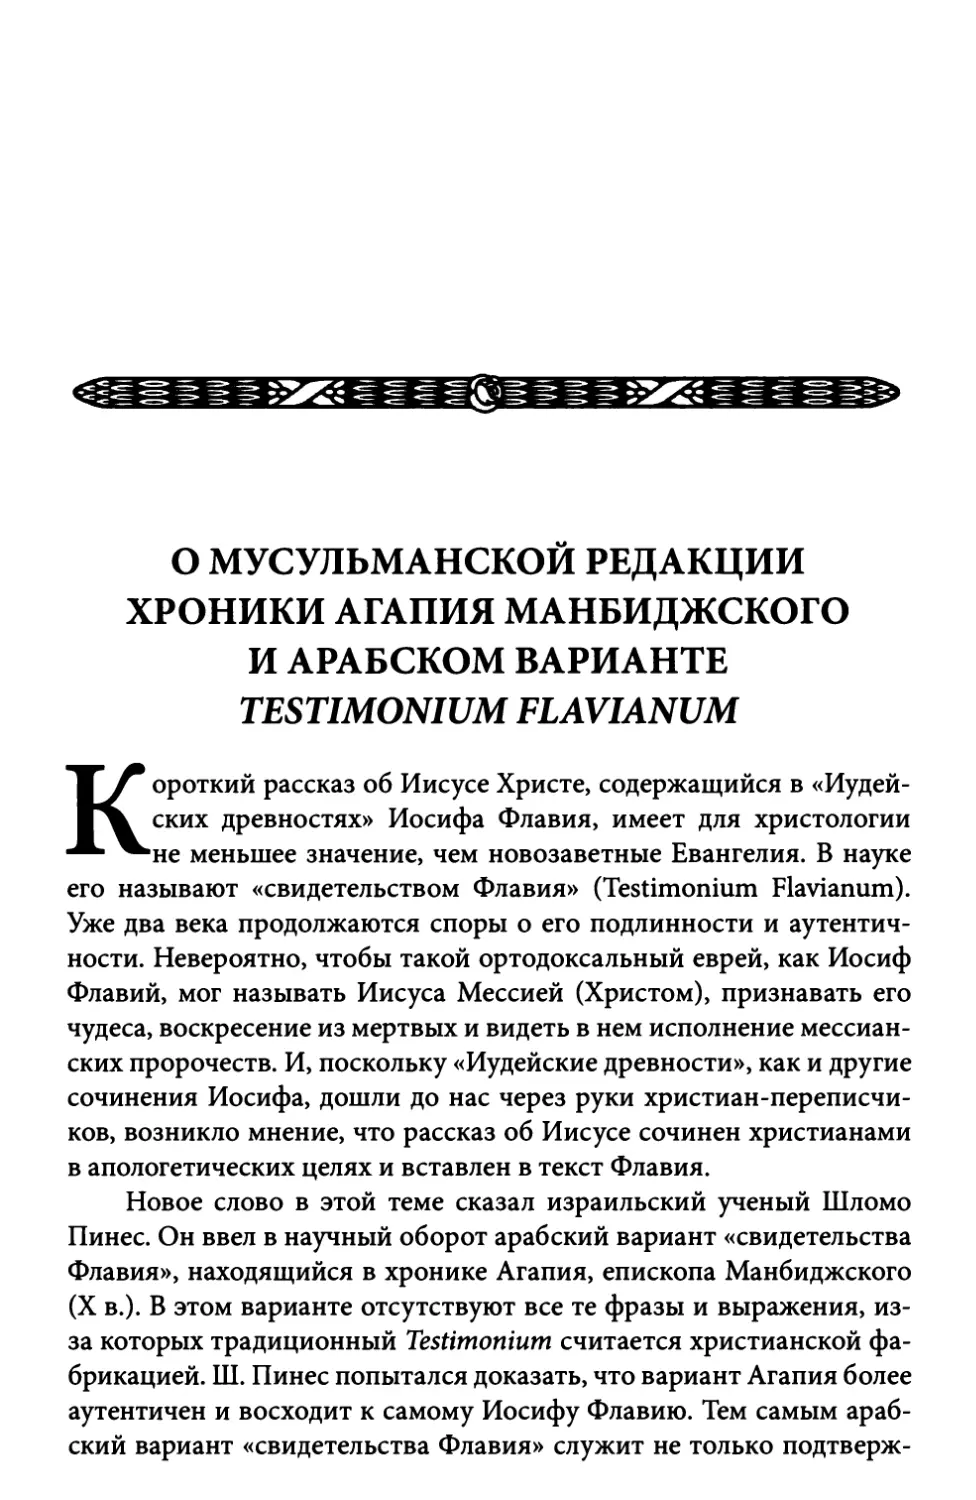 О мусульманской редакции хроники Агапия Манбиджского и арабском варианте Testimonium Flavianum